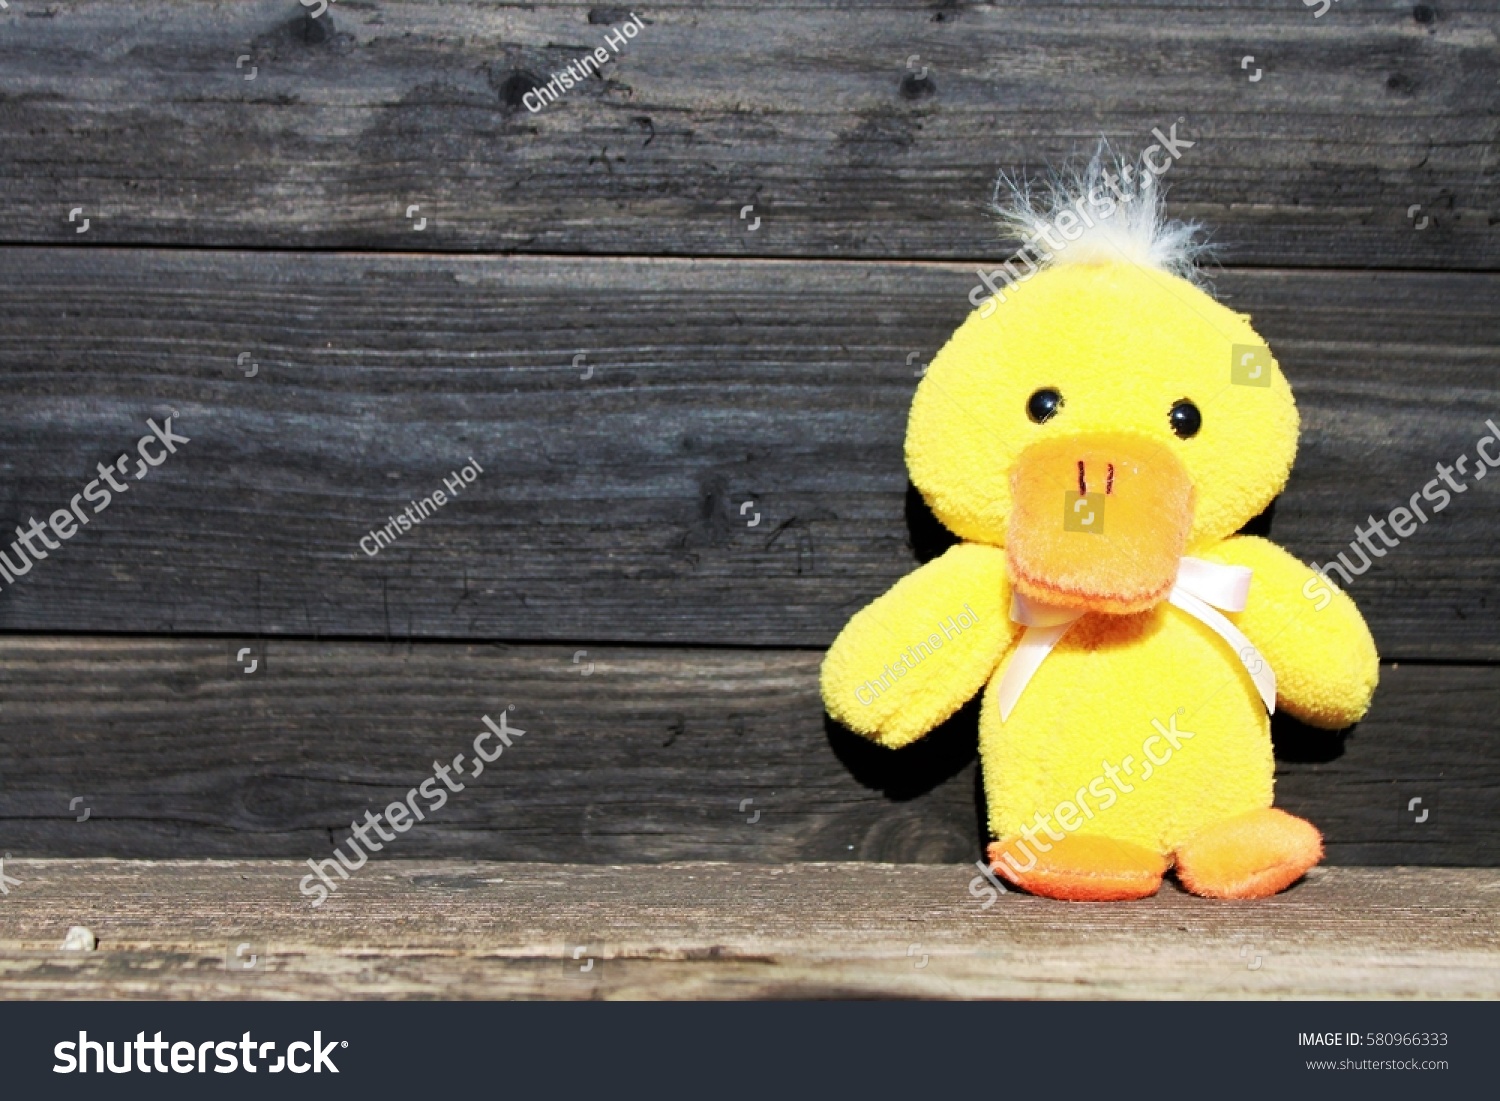 wood duck stuffed animal